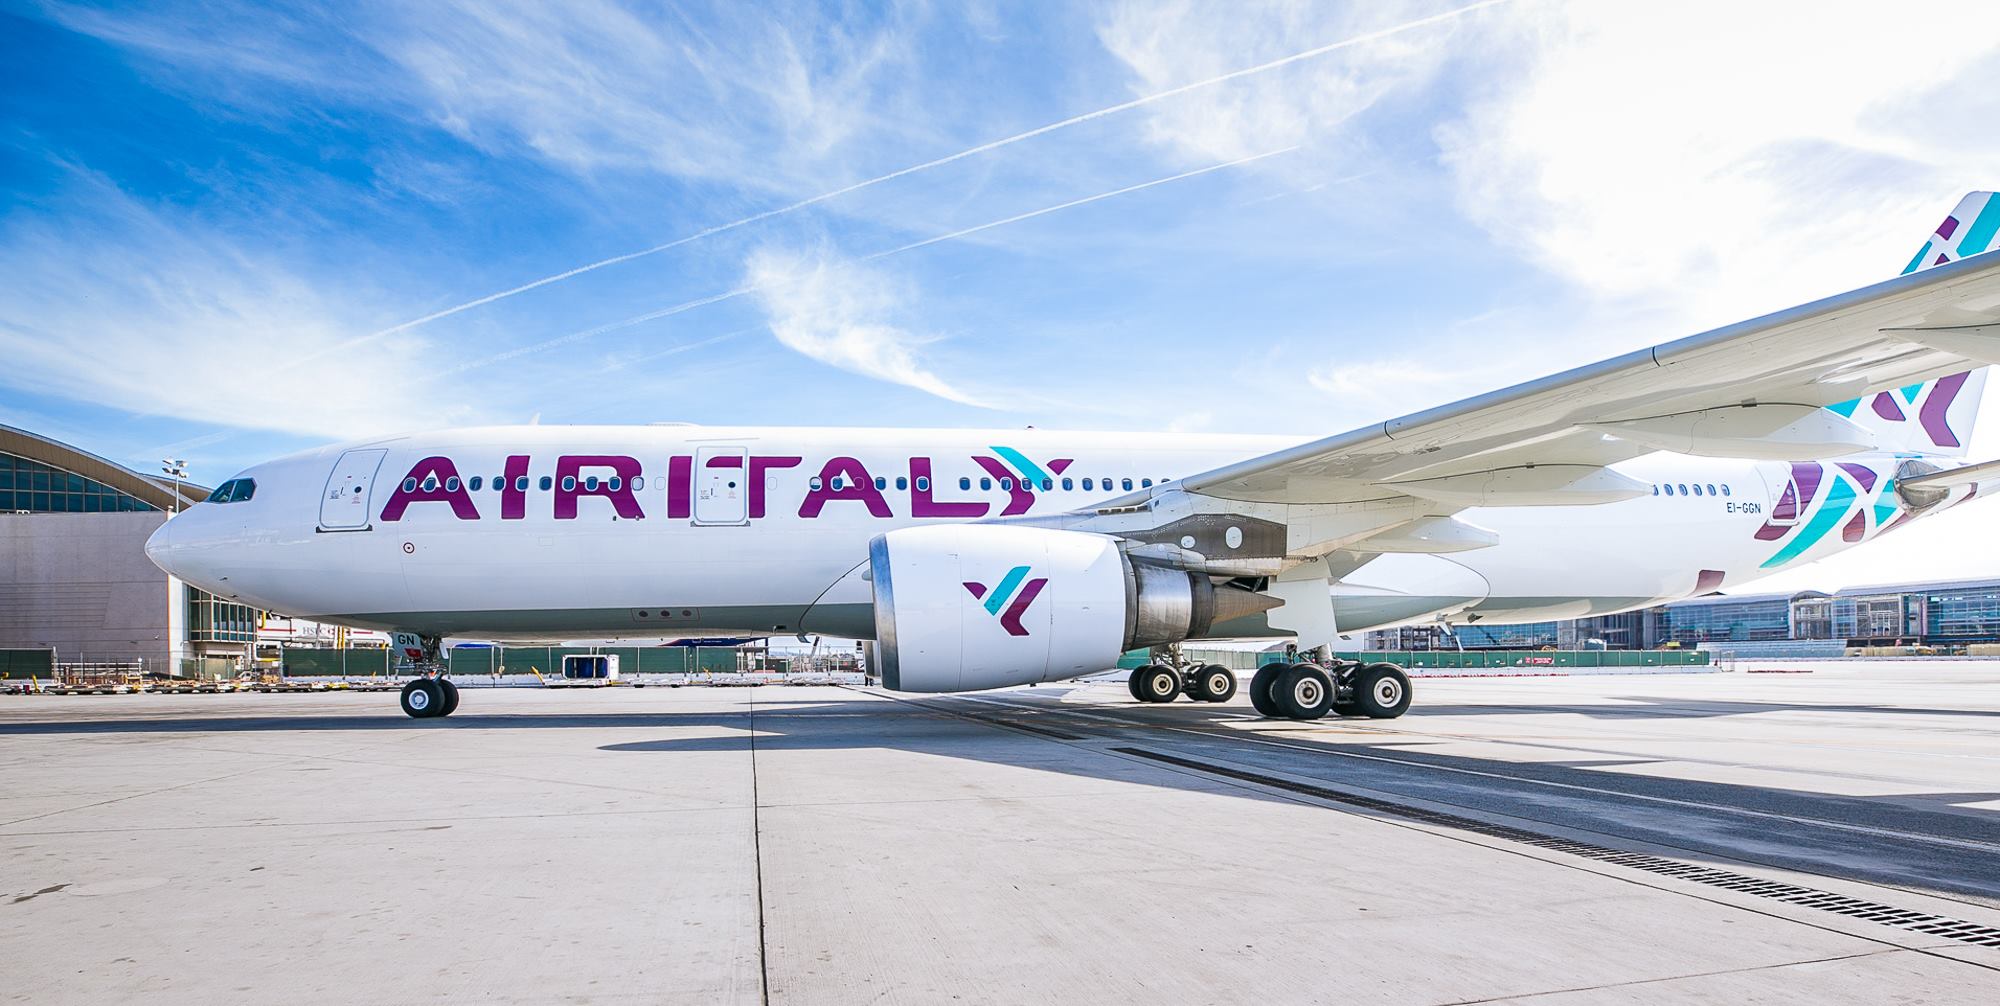 Trasporti, 2020 annus horribilis: dubbi su continuità, Air Italy a rischio